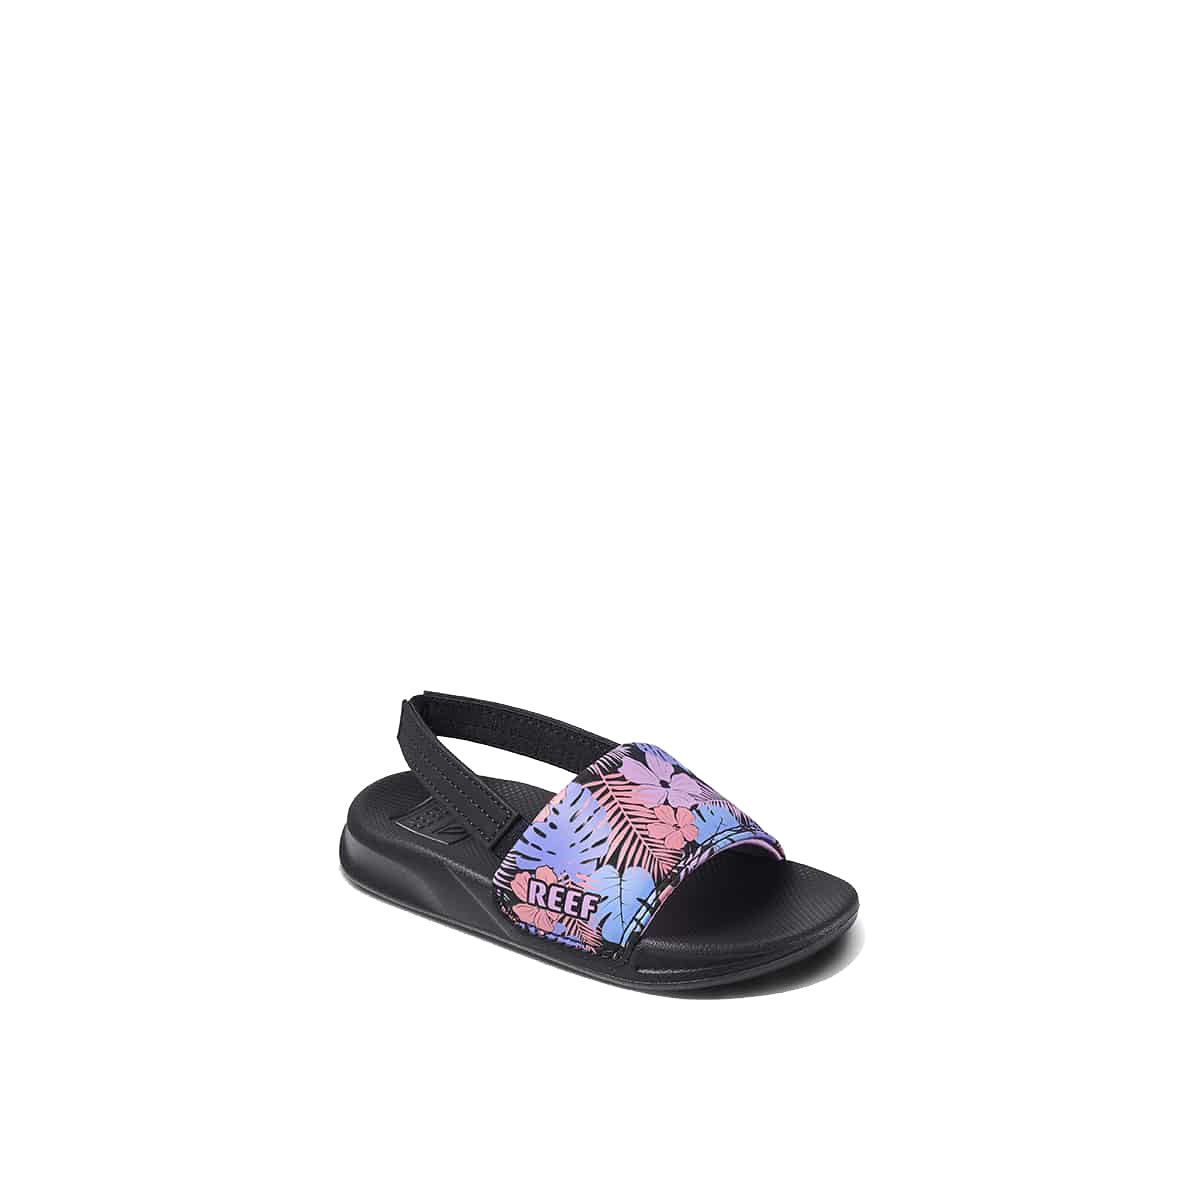 Reef Little One Slide Girls Sandal Purple Fronds 5 C